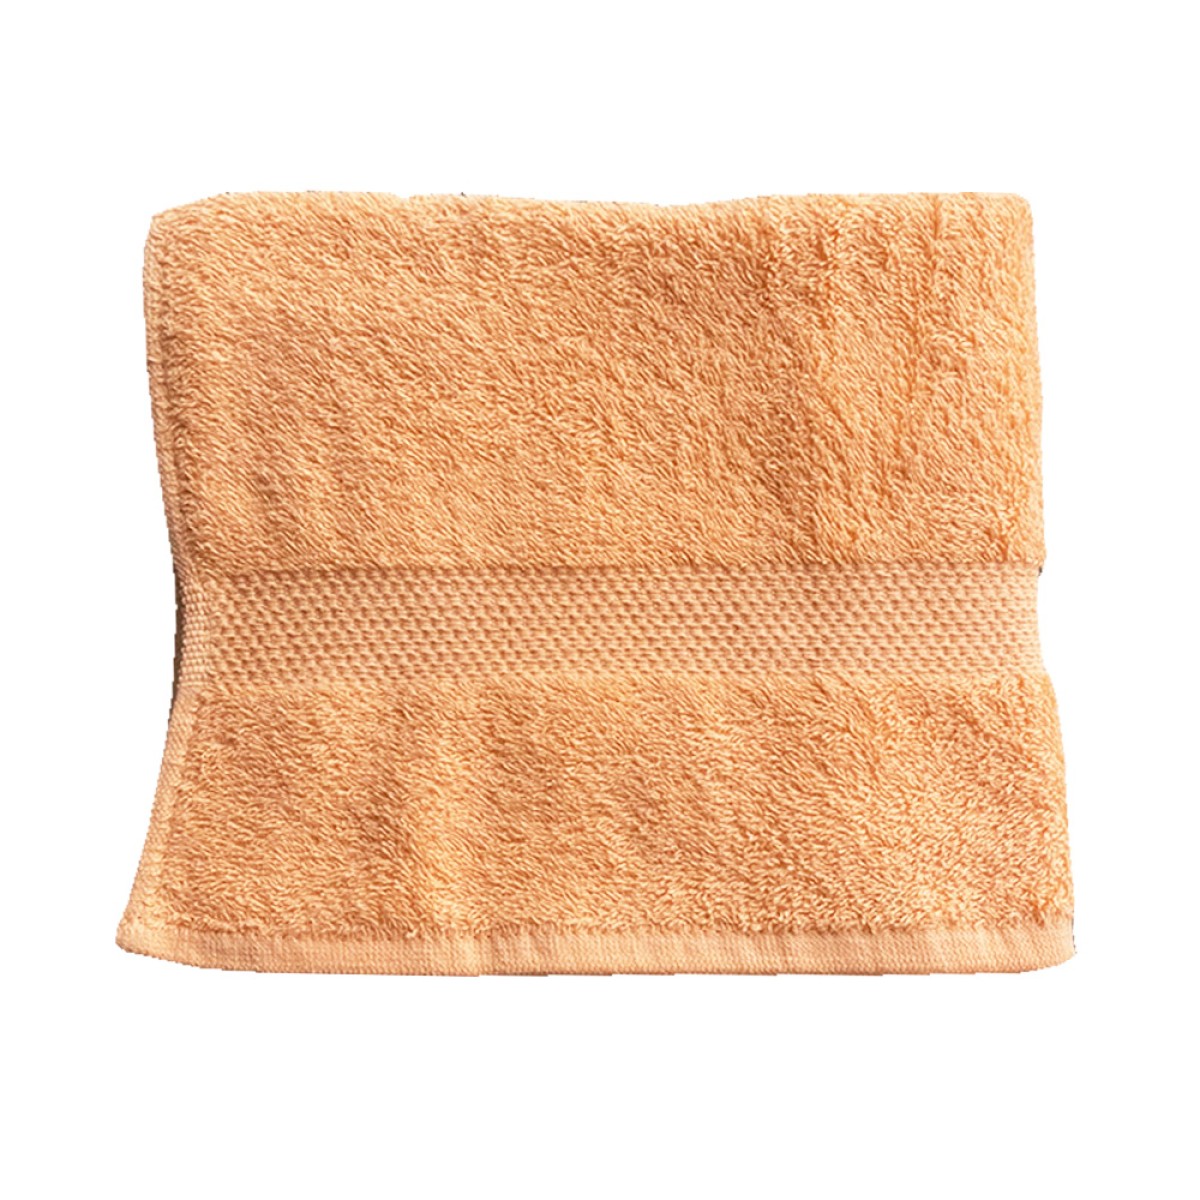 Πετσέτα Προσώπου 450grs (50x90) 100% Βαμβάκι με μπορντούρα με ανάγλυφο σχέδιο έντονο πορτοκαλί χρώμα Sidirela Toulip E-1765-8